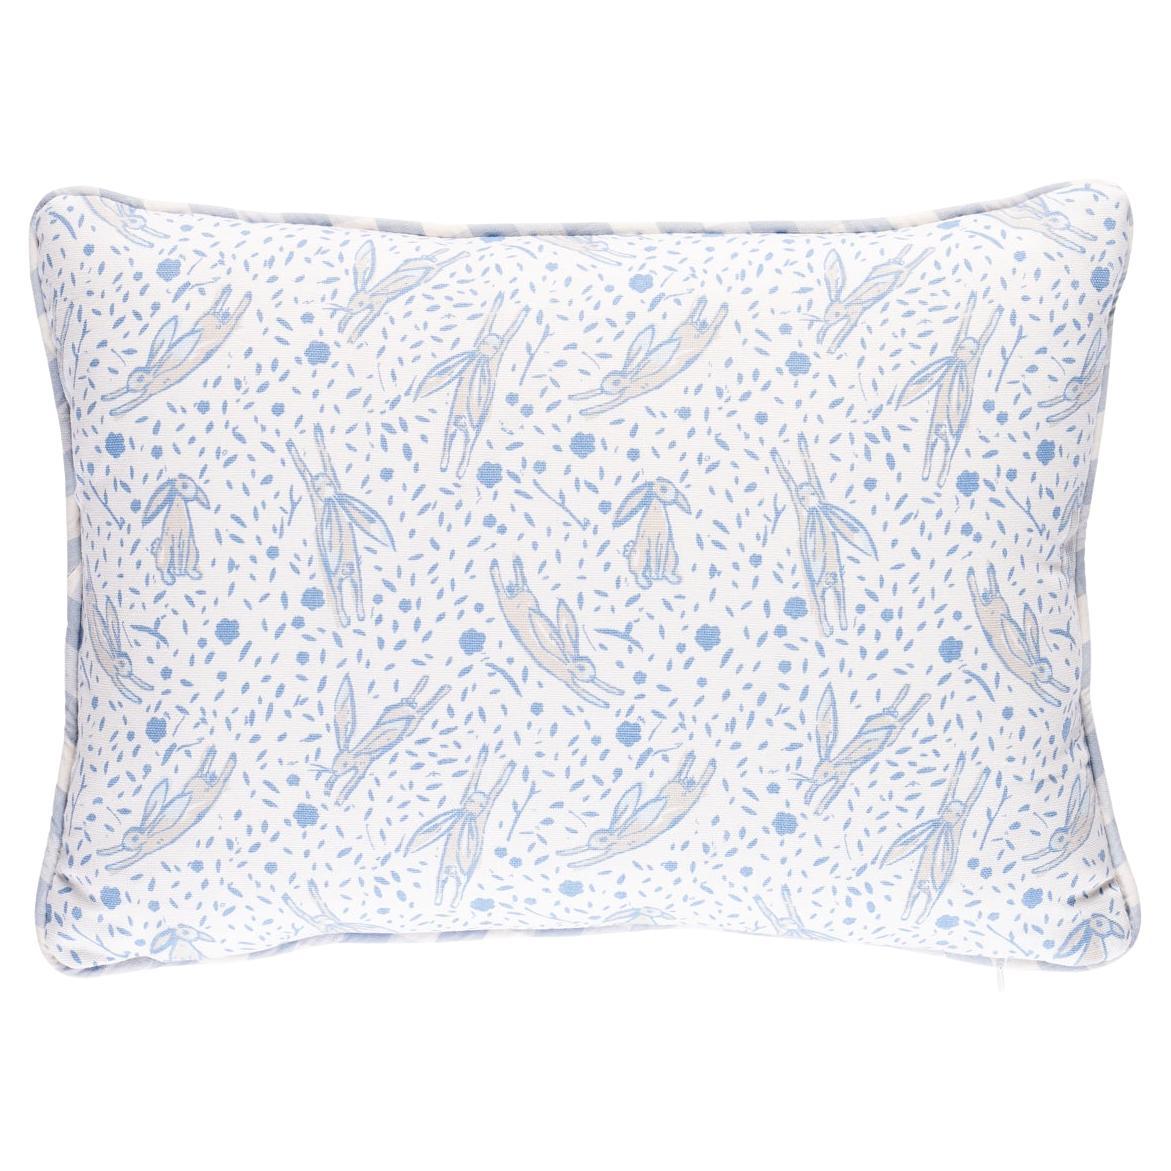 Schumacher x Marie-Chantal Rabbit Print 16 x 12" Pillow in Blue For Sale